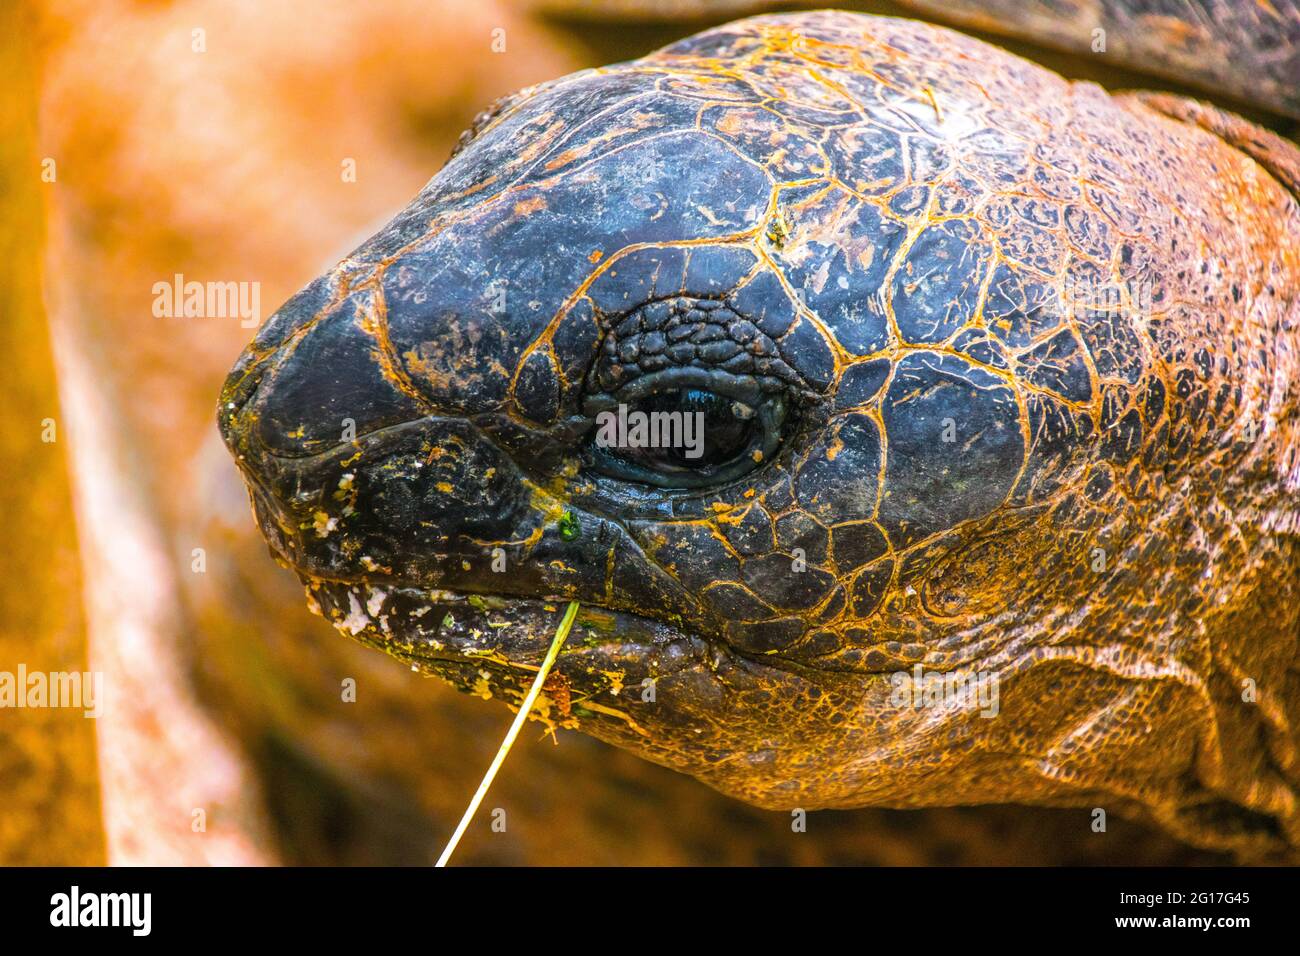 Les tortues terrestres sont des espèces de reptiles de la famille des Testudinidae l'ordre Testudines. Banque D'Images